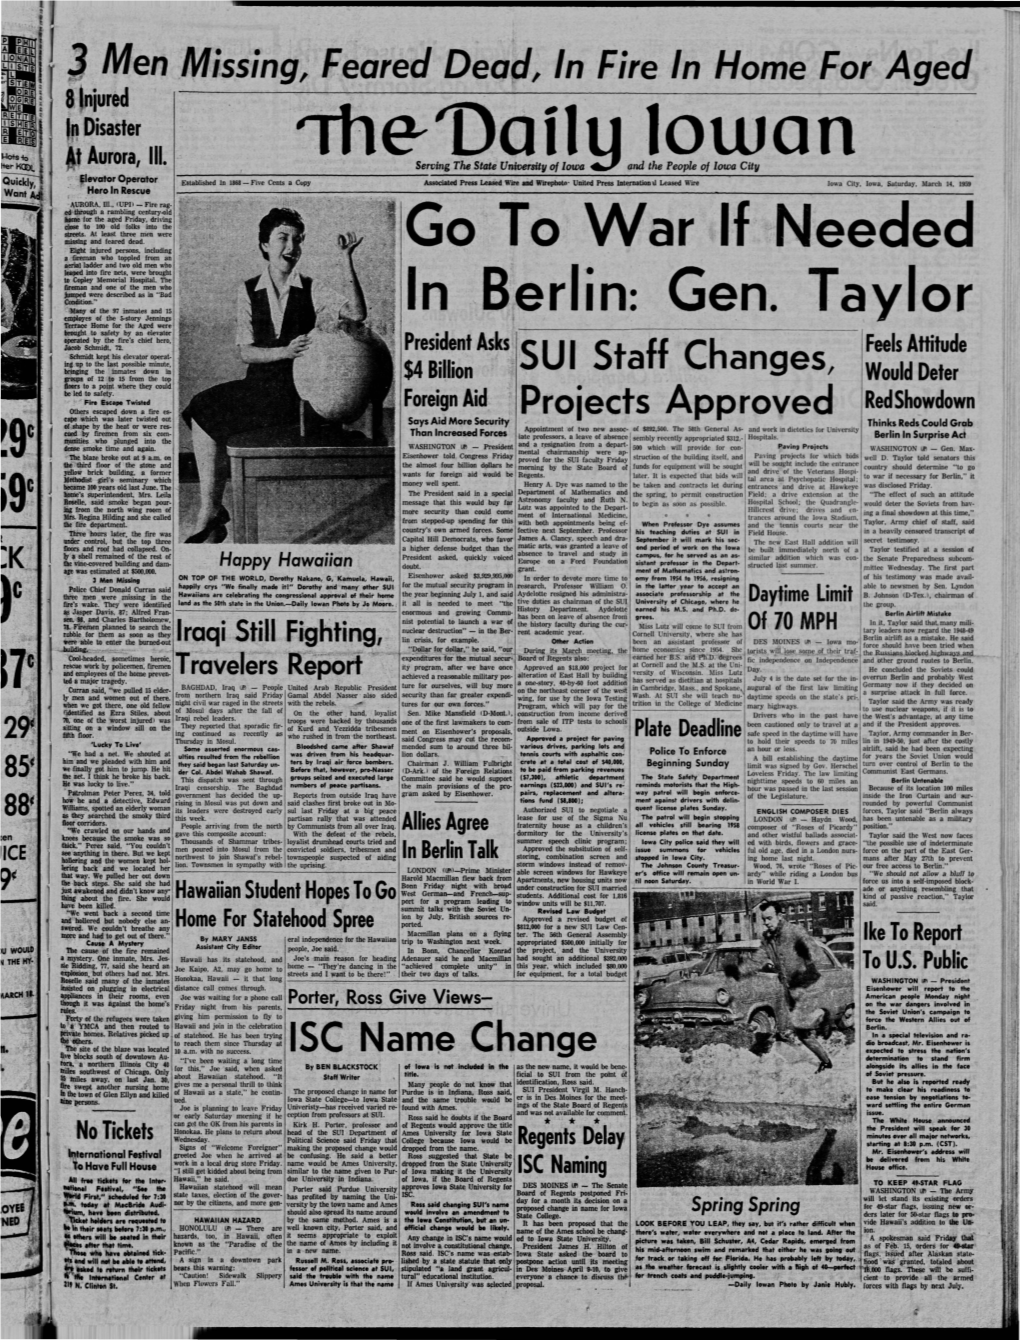 Daily Iowan (Iowa City, Iowa), 1959-03-14